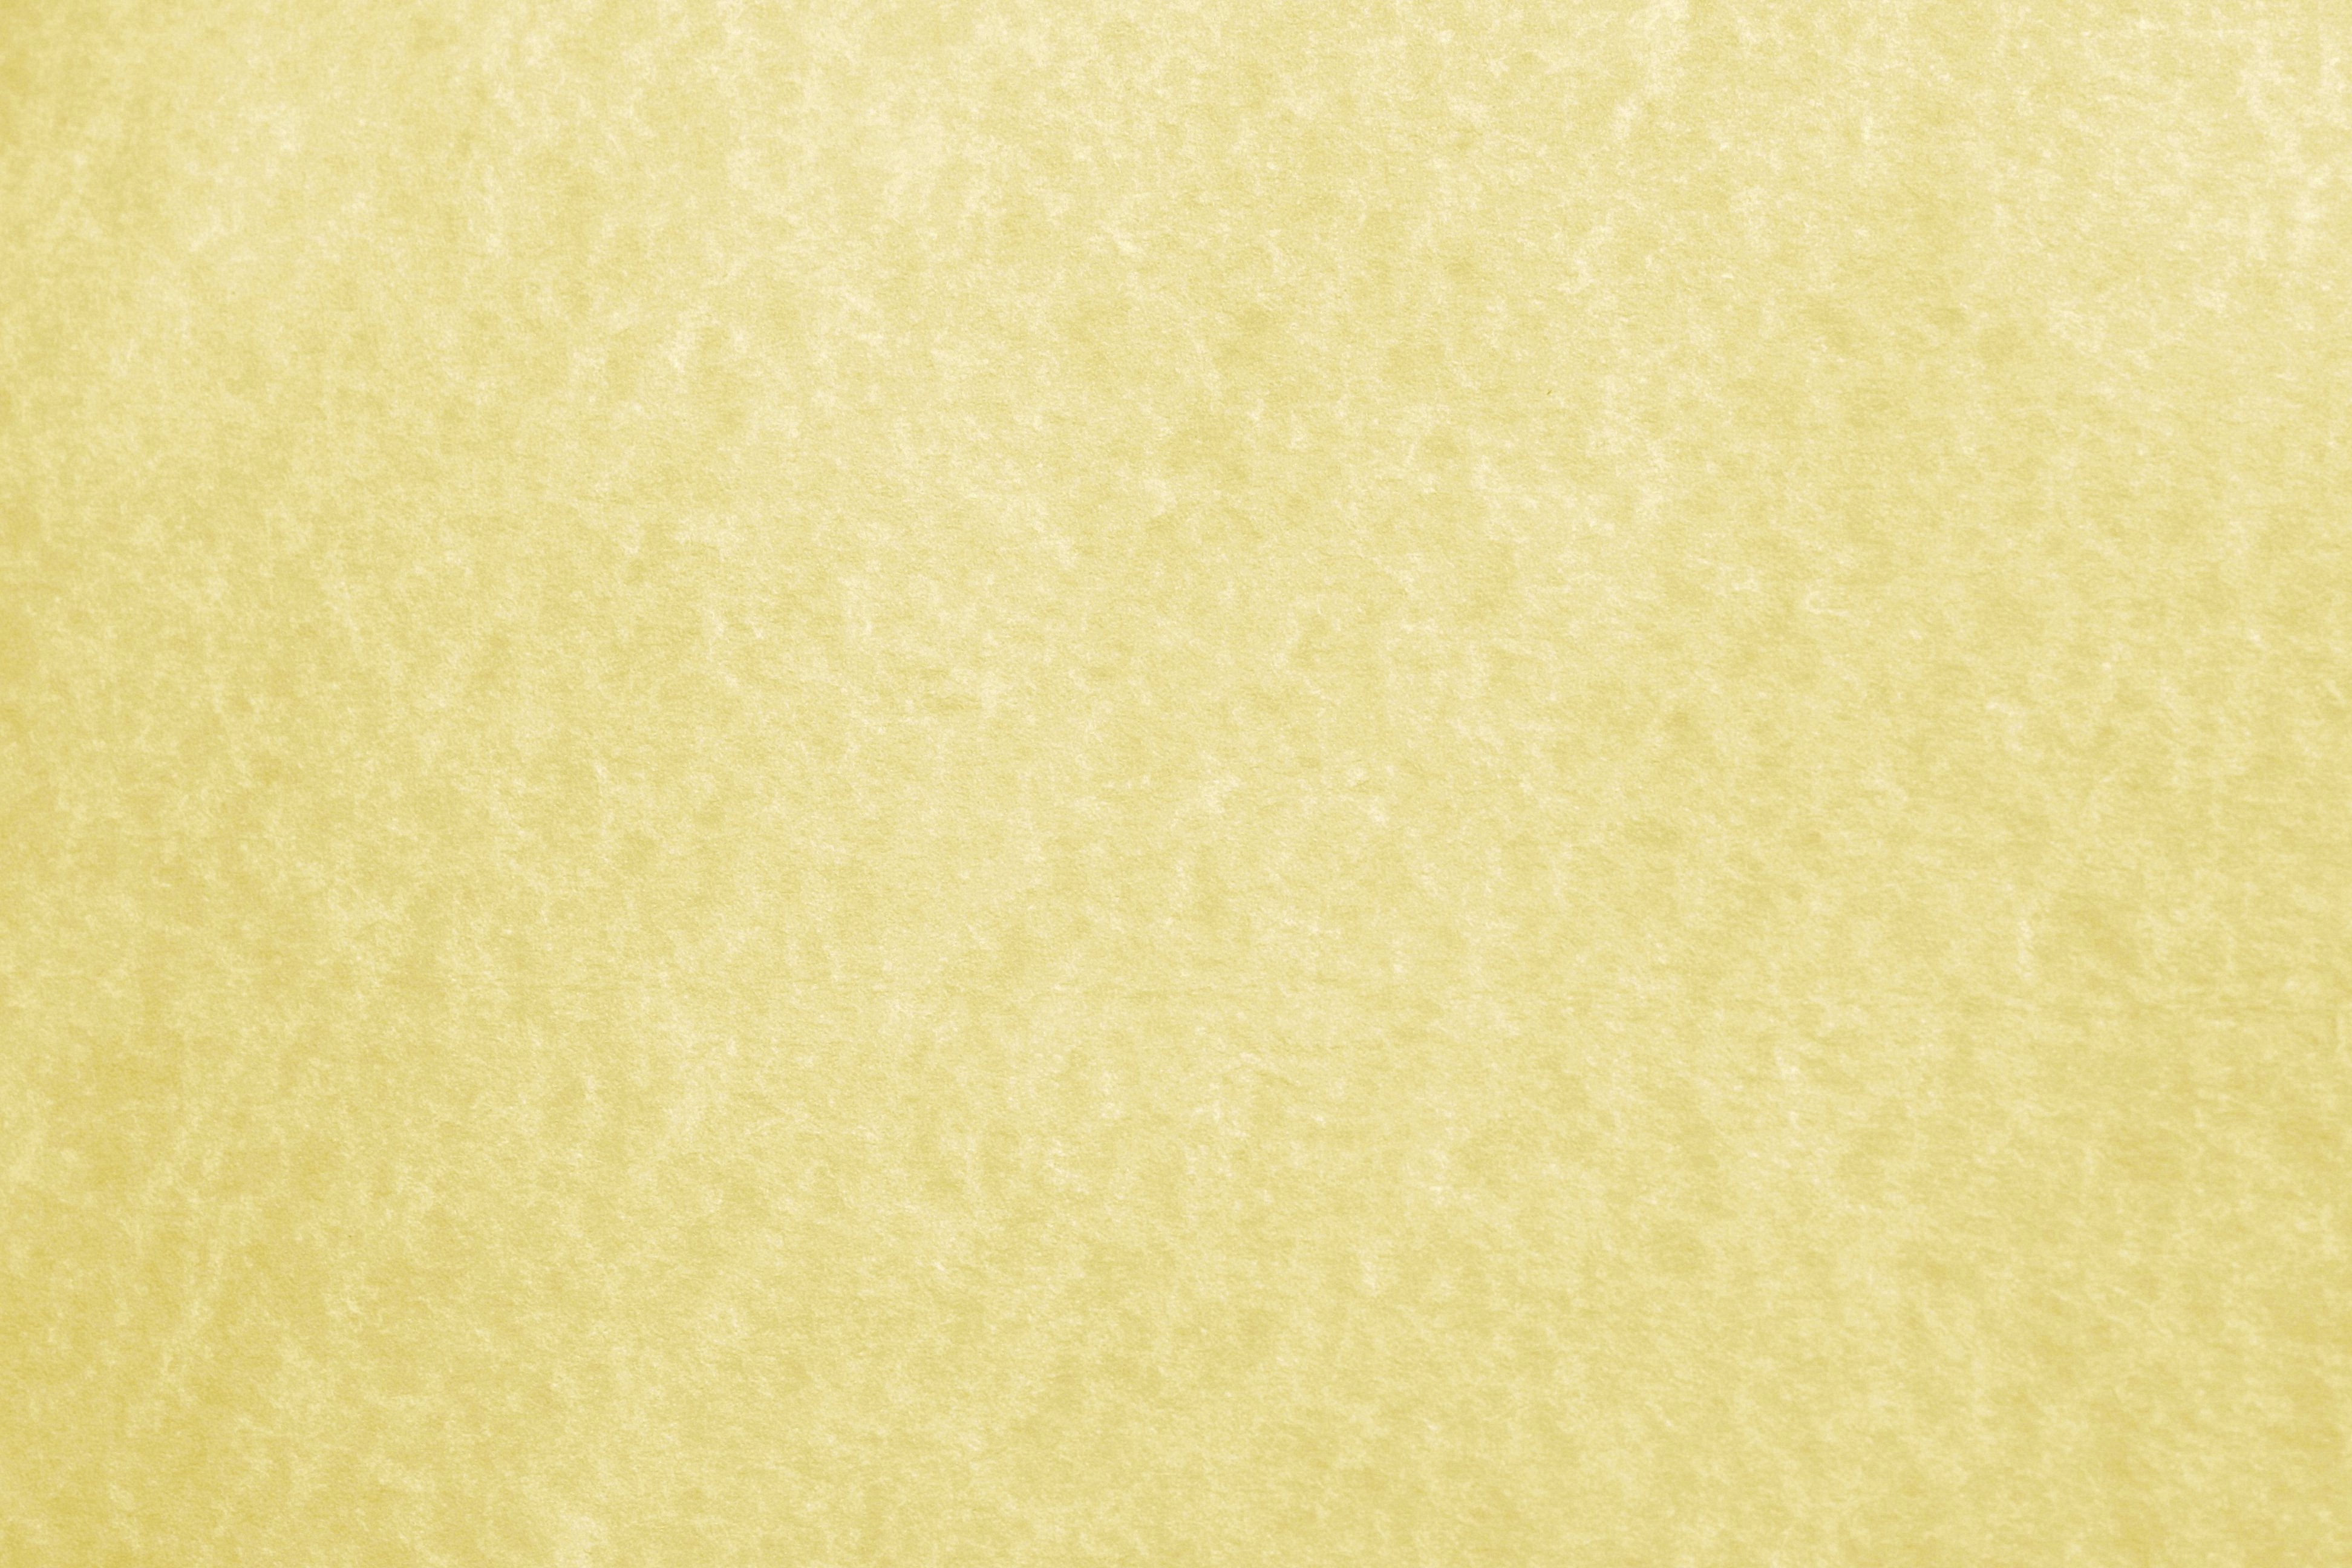 Golden Parchment Paper Texture Picture   Free Photograph   Photos